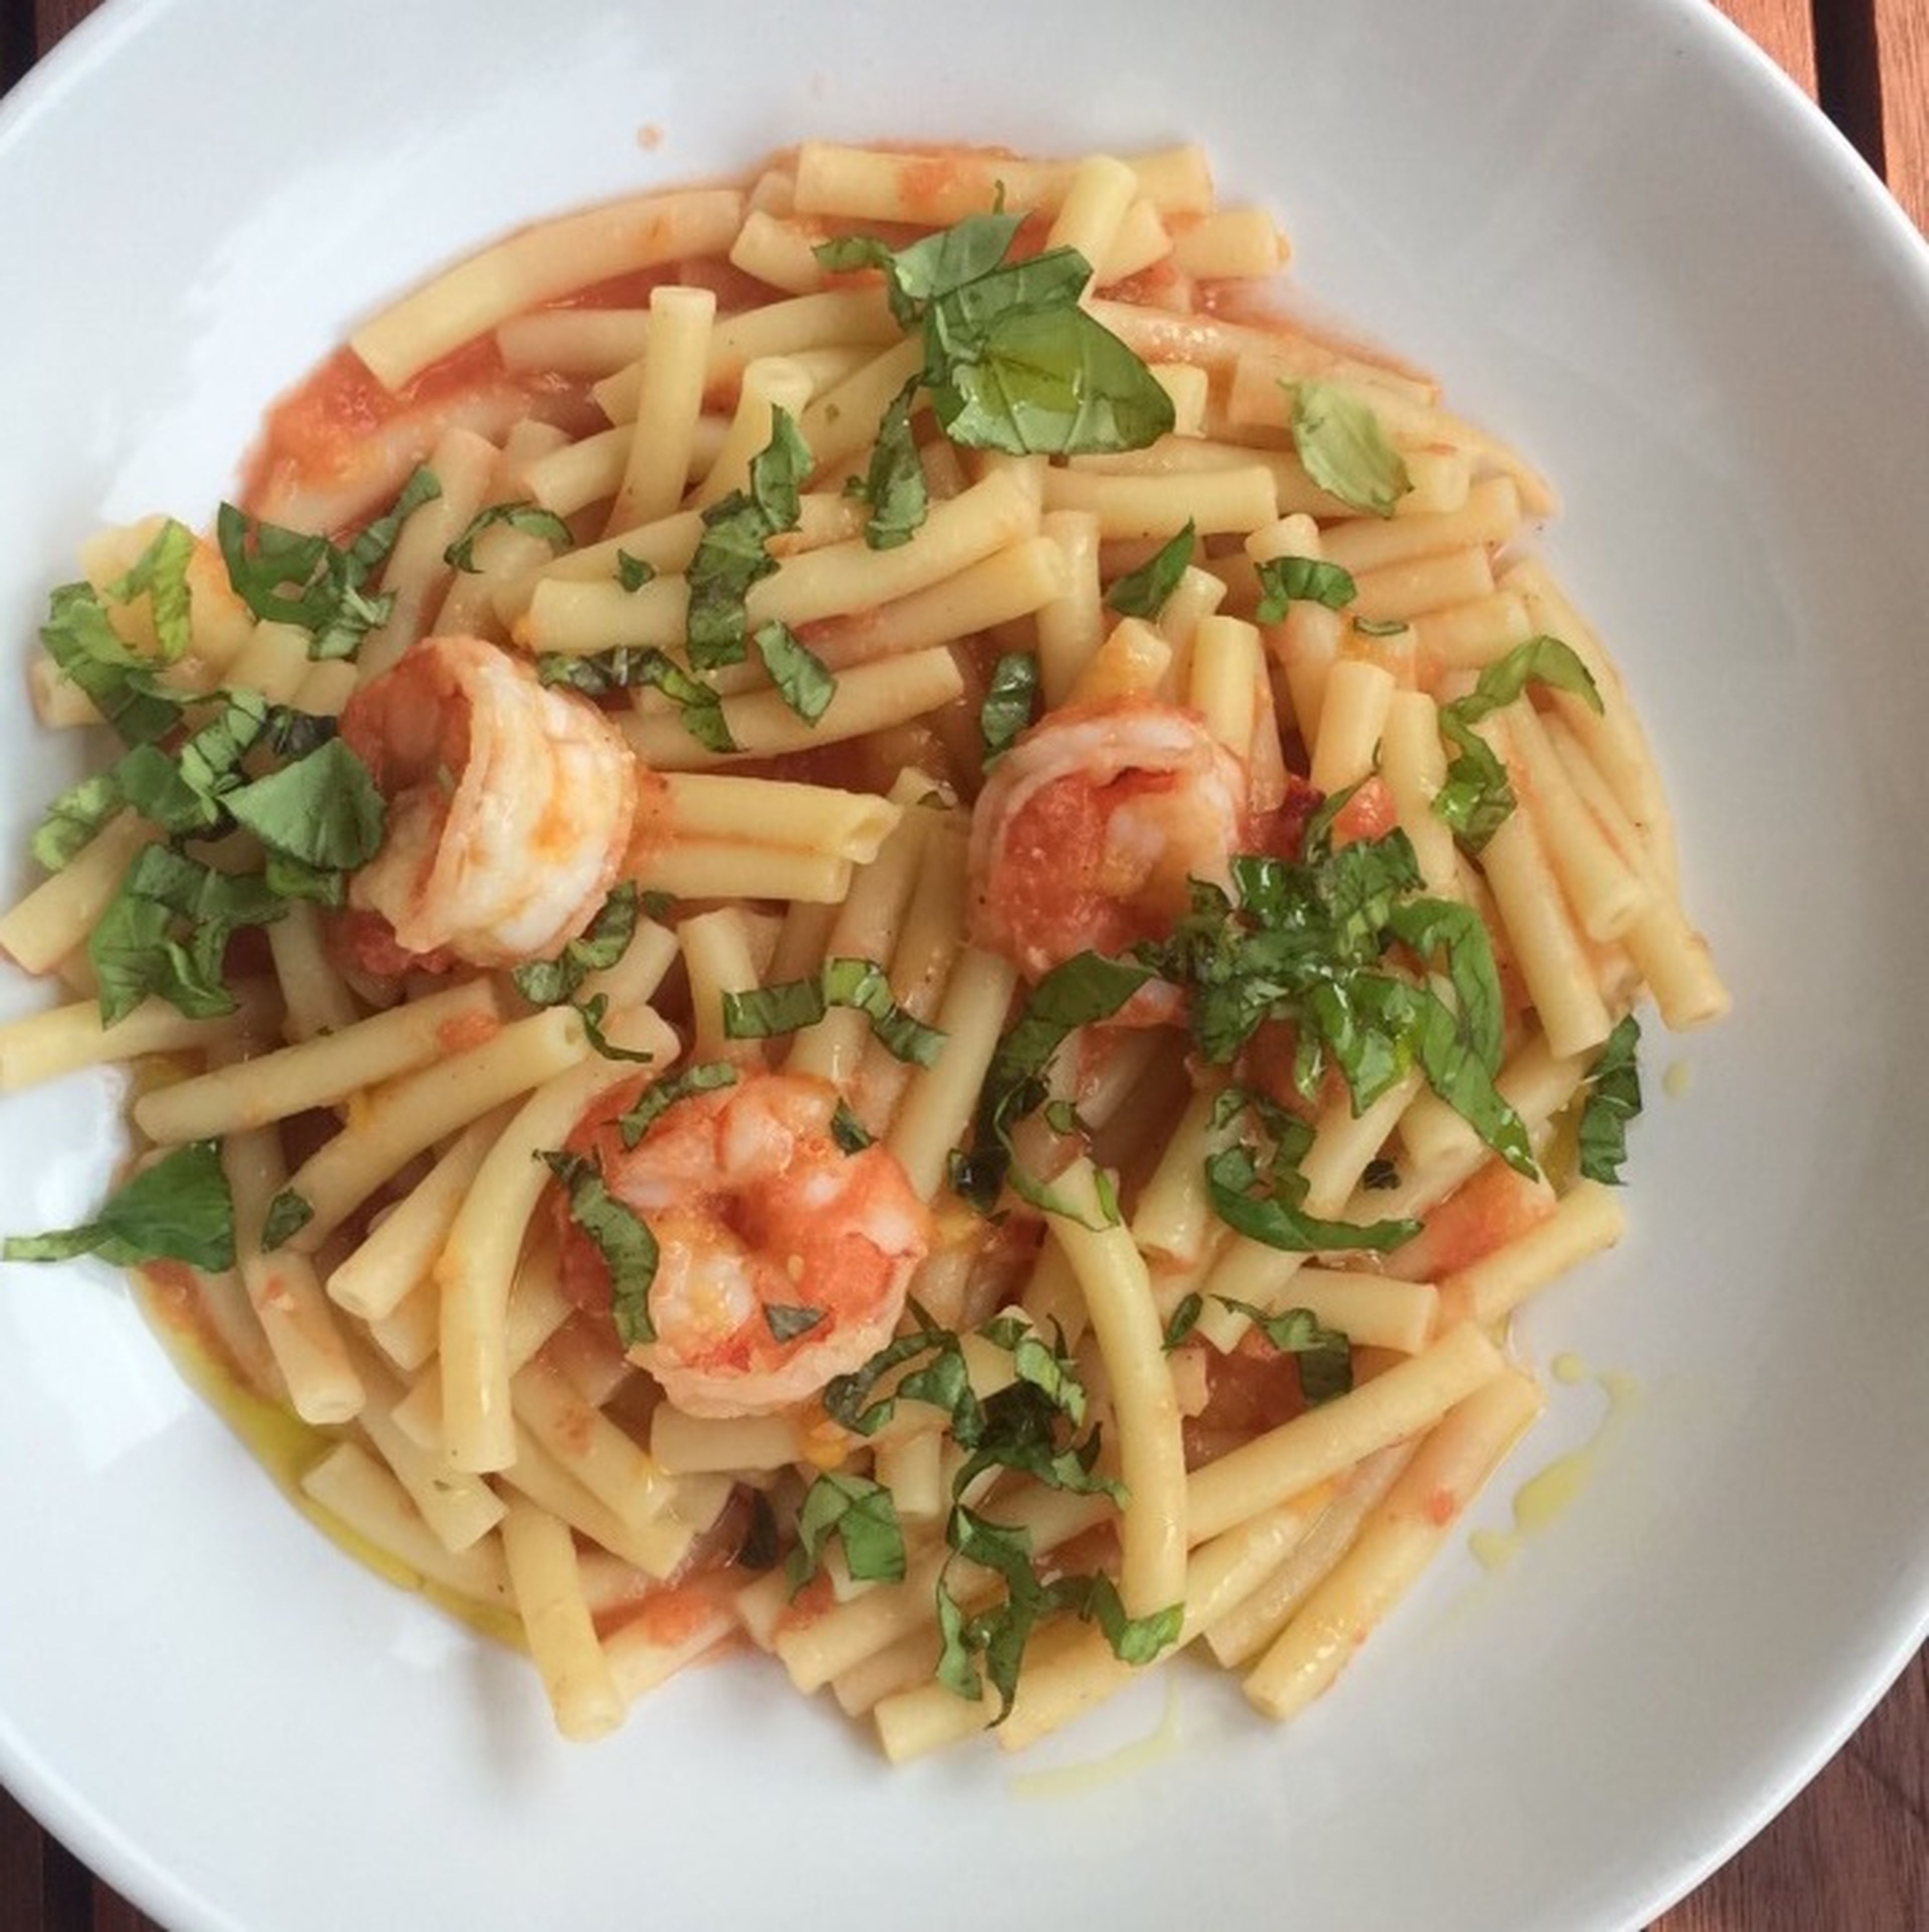 Macaroni with shrimp, tomato, and nectarine